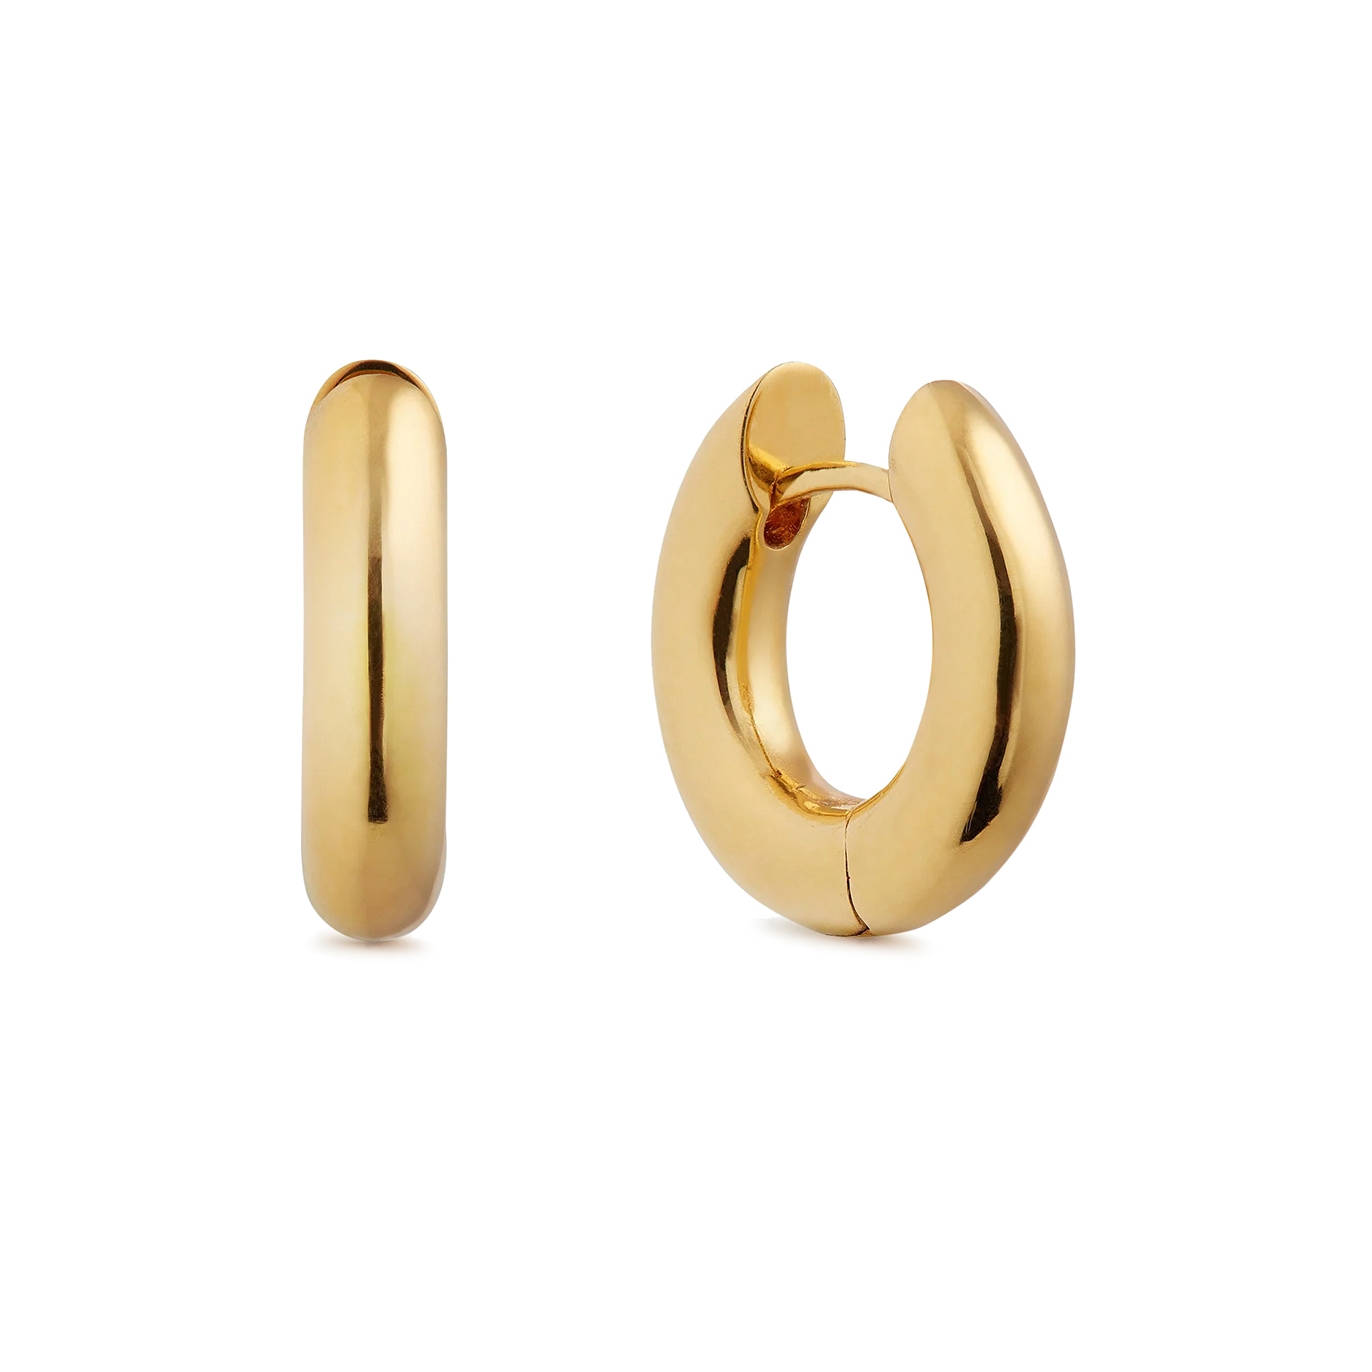 OTIUMBERG CHUNKY SMALL 14KT GOLD VERMEIL HOOP EARRINGS